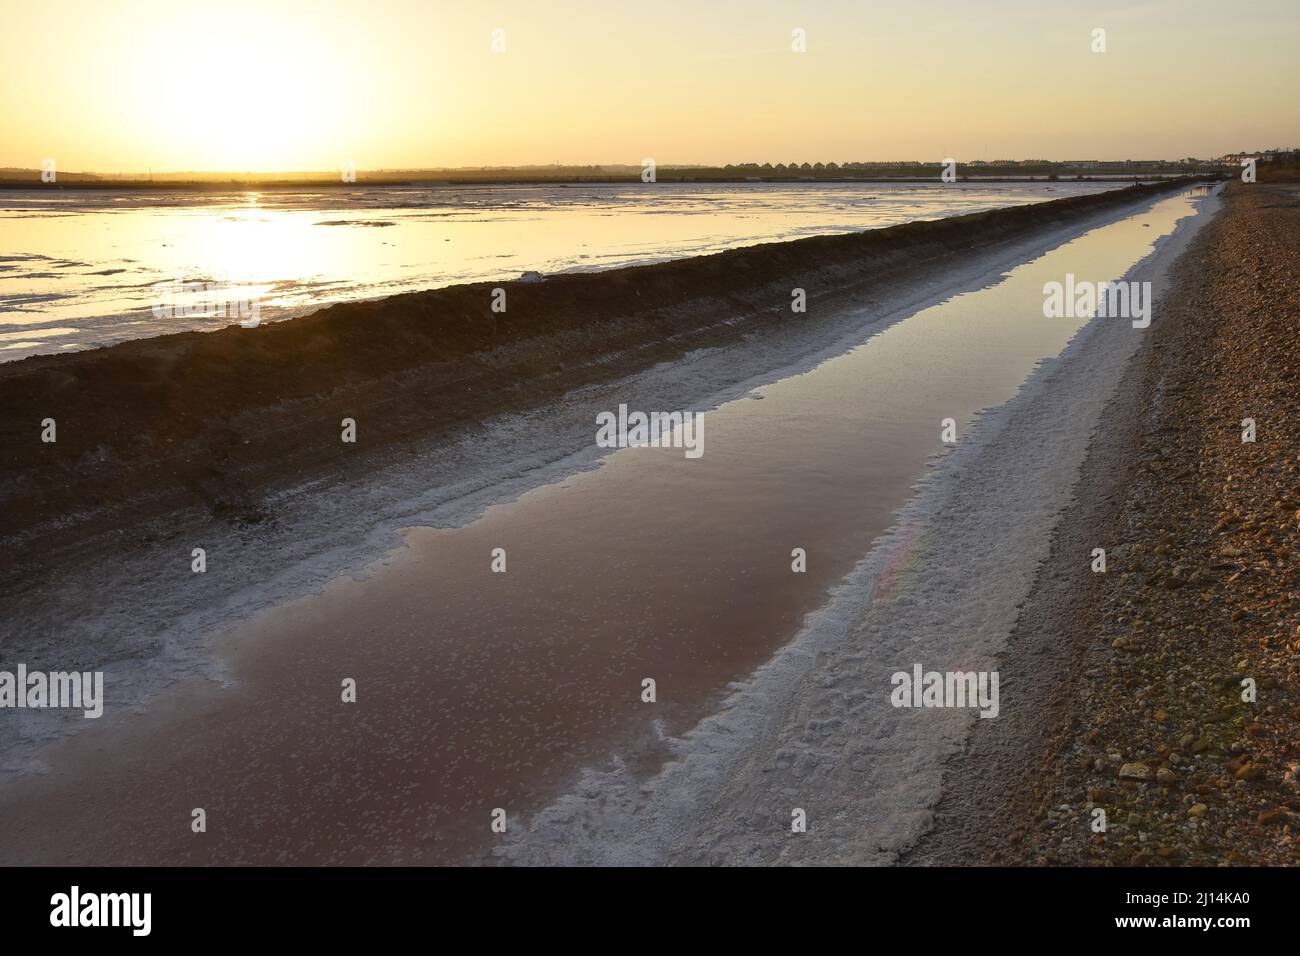 Natürliche Salzproduktion, Salz wird geerntet, nachdem das Wasser aus dem Salzteich verdampft, dem Naturgebiet Marismas del Odiel in Huelva im Süden Spaniens. Stockfoto